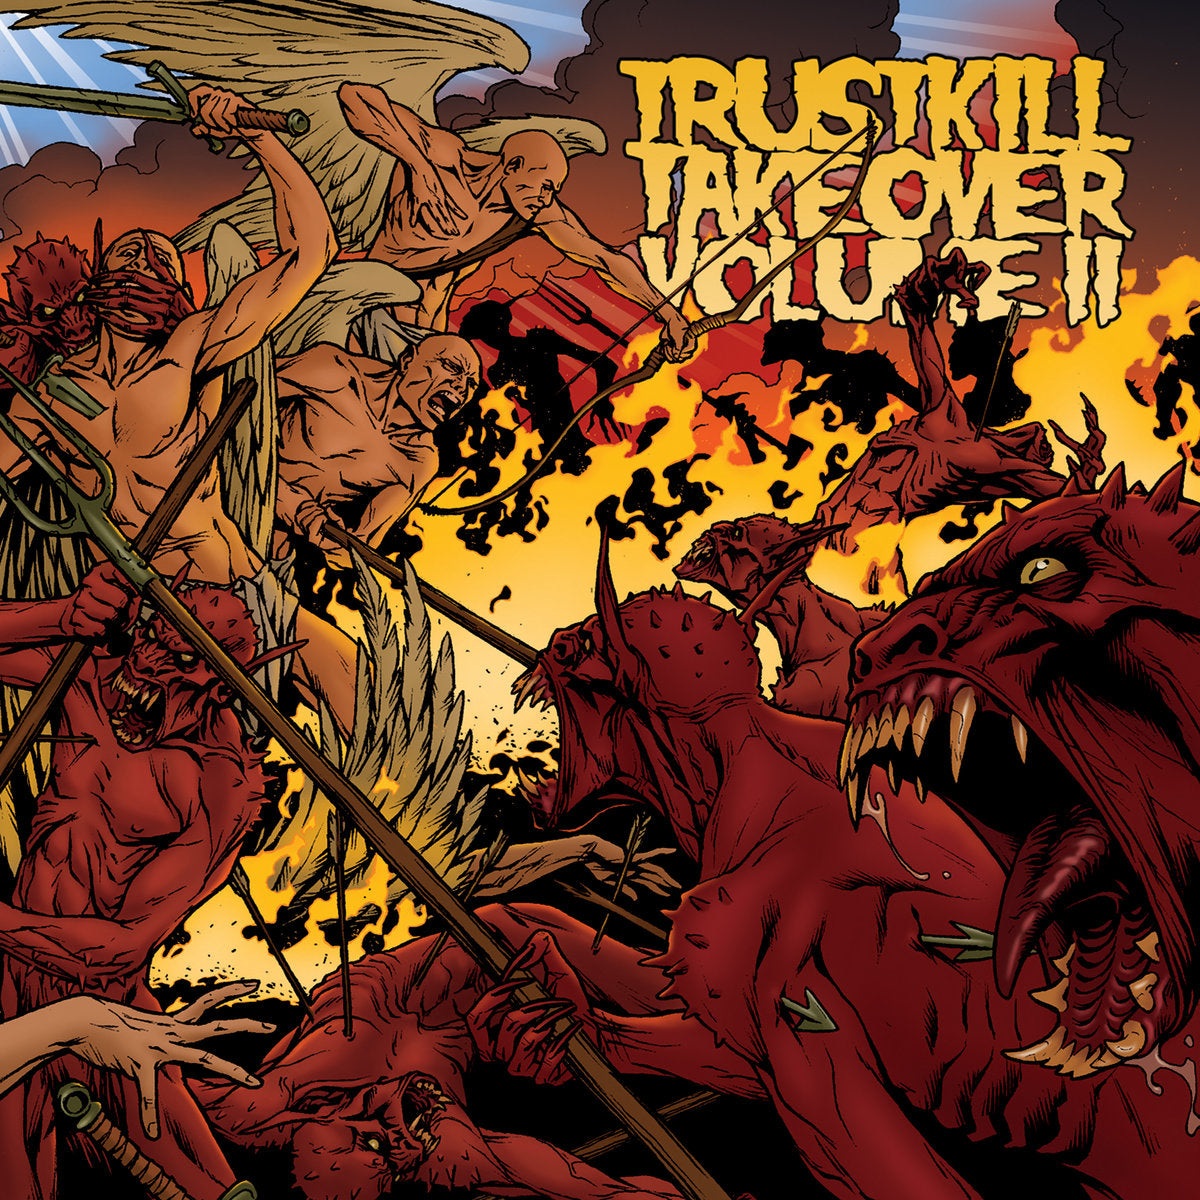 Trustkill Records "Trustkill Takeover Volume II" Compilation CD